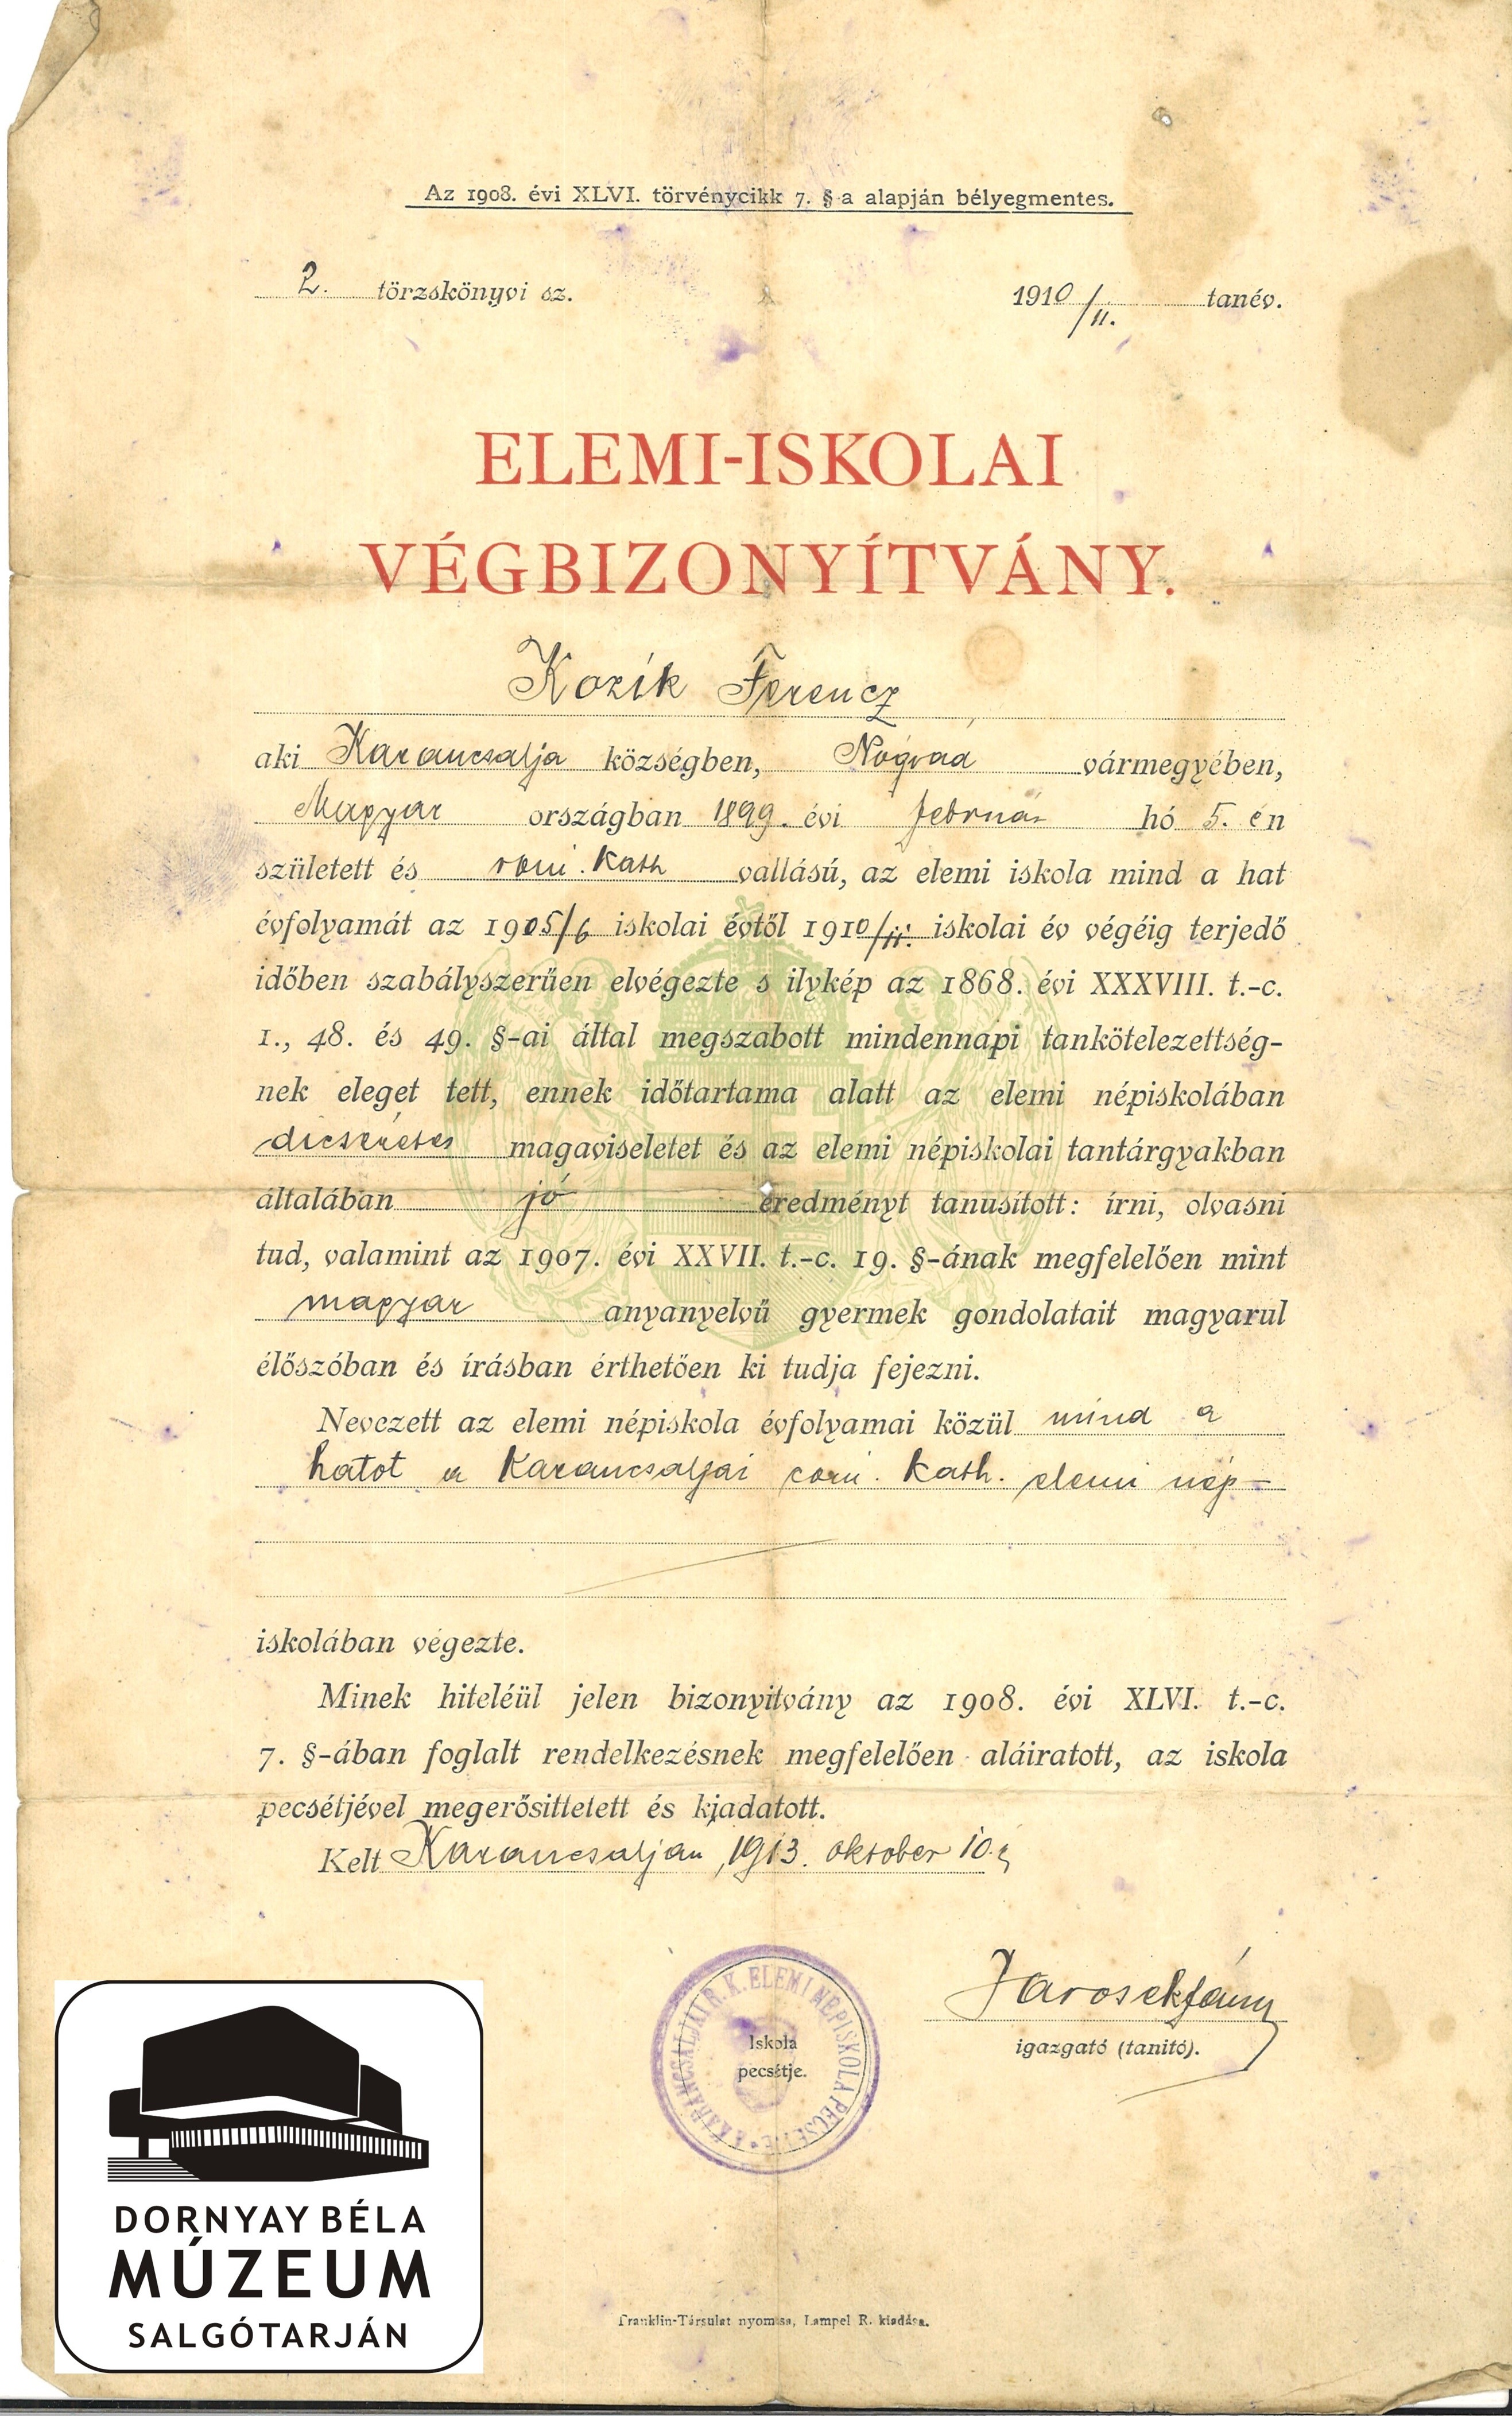 Kozik Ferenc - elemi iskolai végbizonyítványa, Karancsalja (Dornyay Béla Múzeum, Salgótarján CC BY-NC-SA)